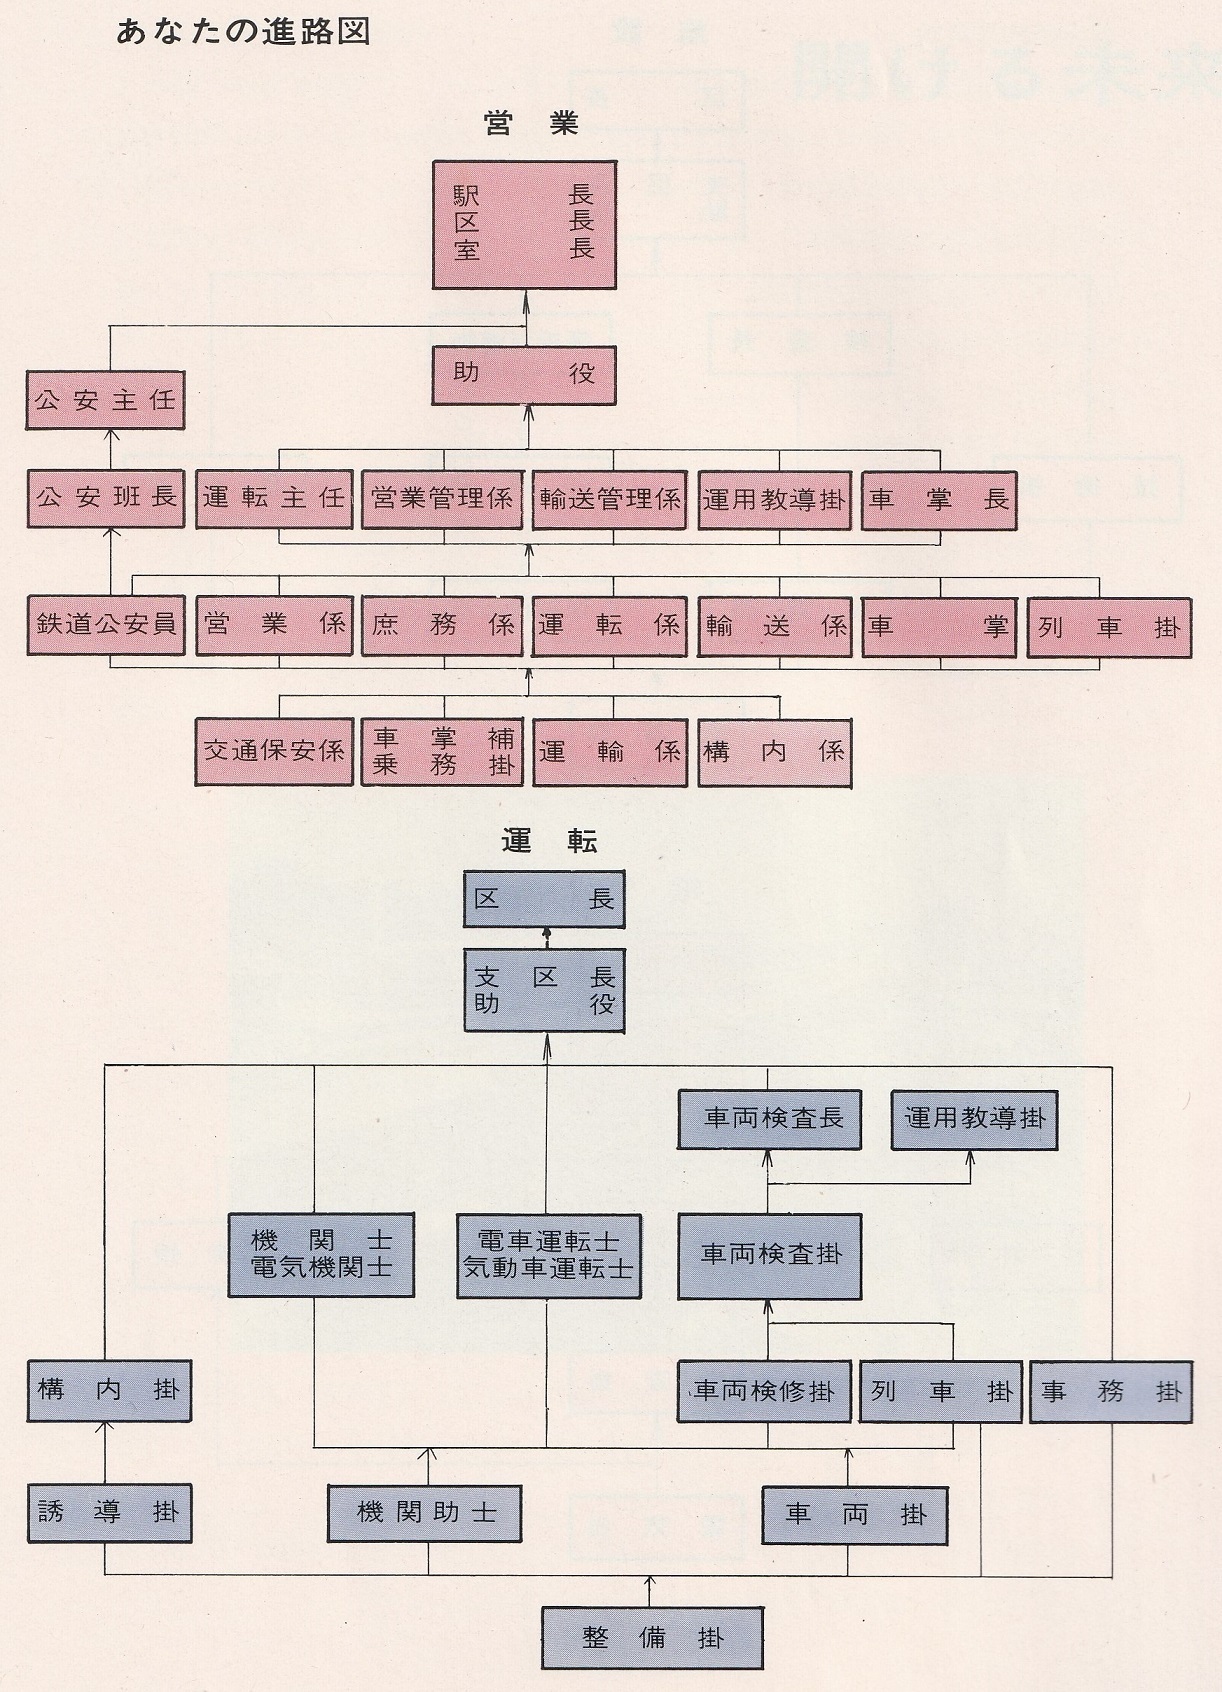 国鉄の営業系統・運転系統における進路図(1974)